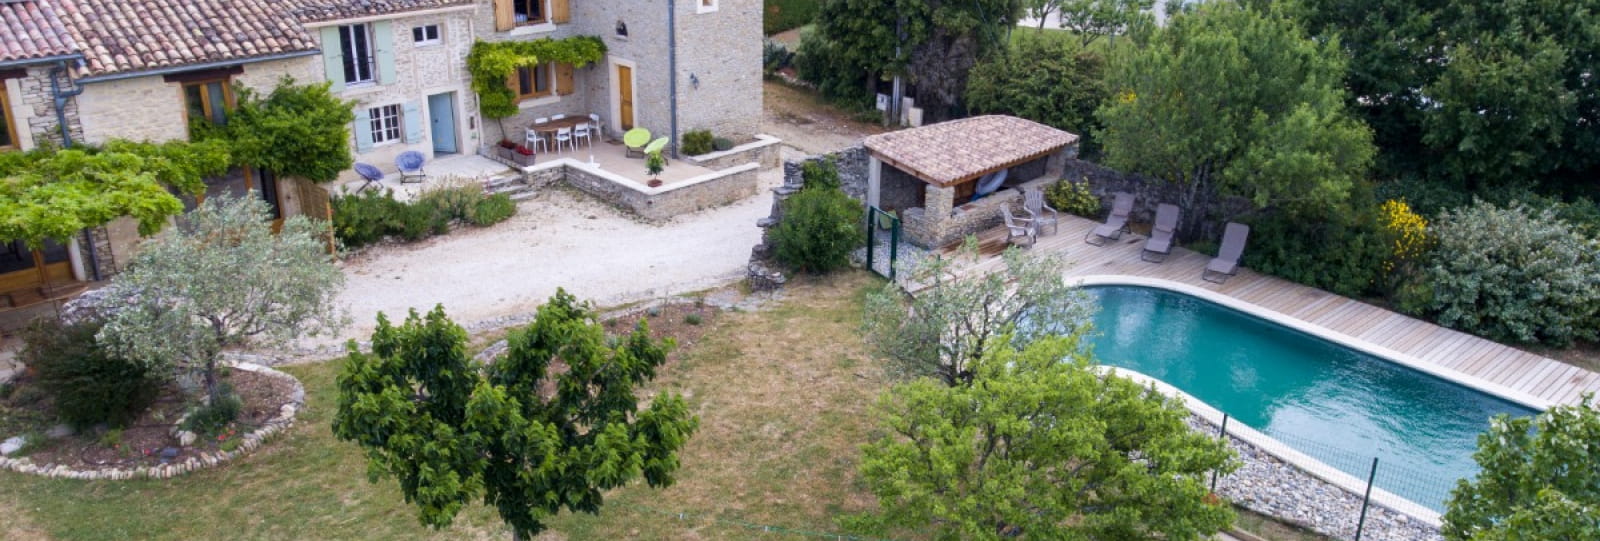 Les Bories - Quiet duplex house with pool in Drome Provençale